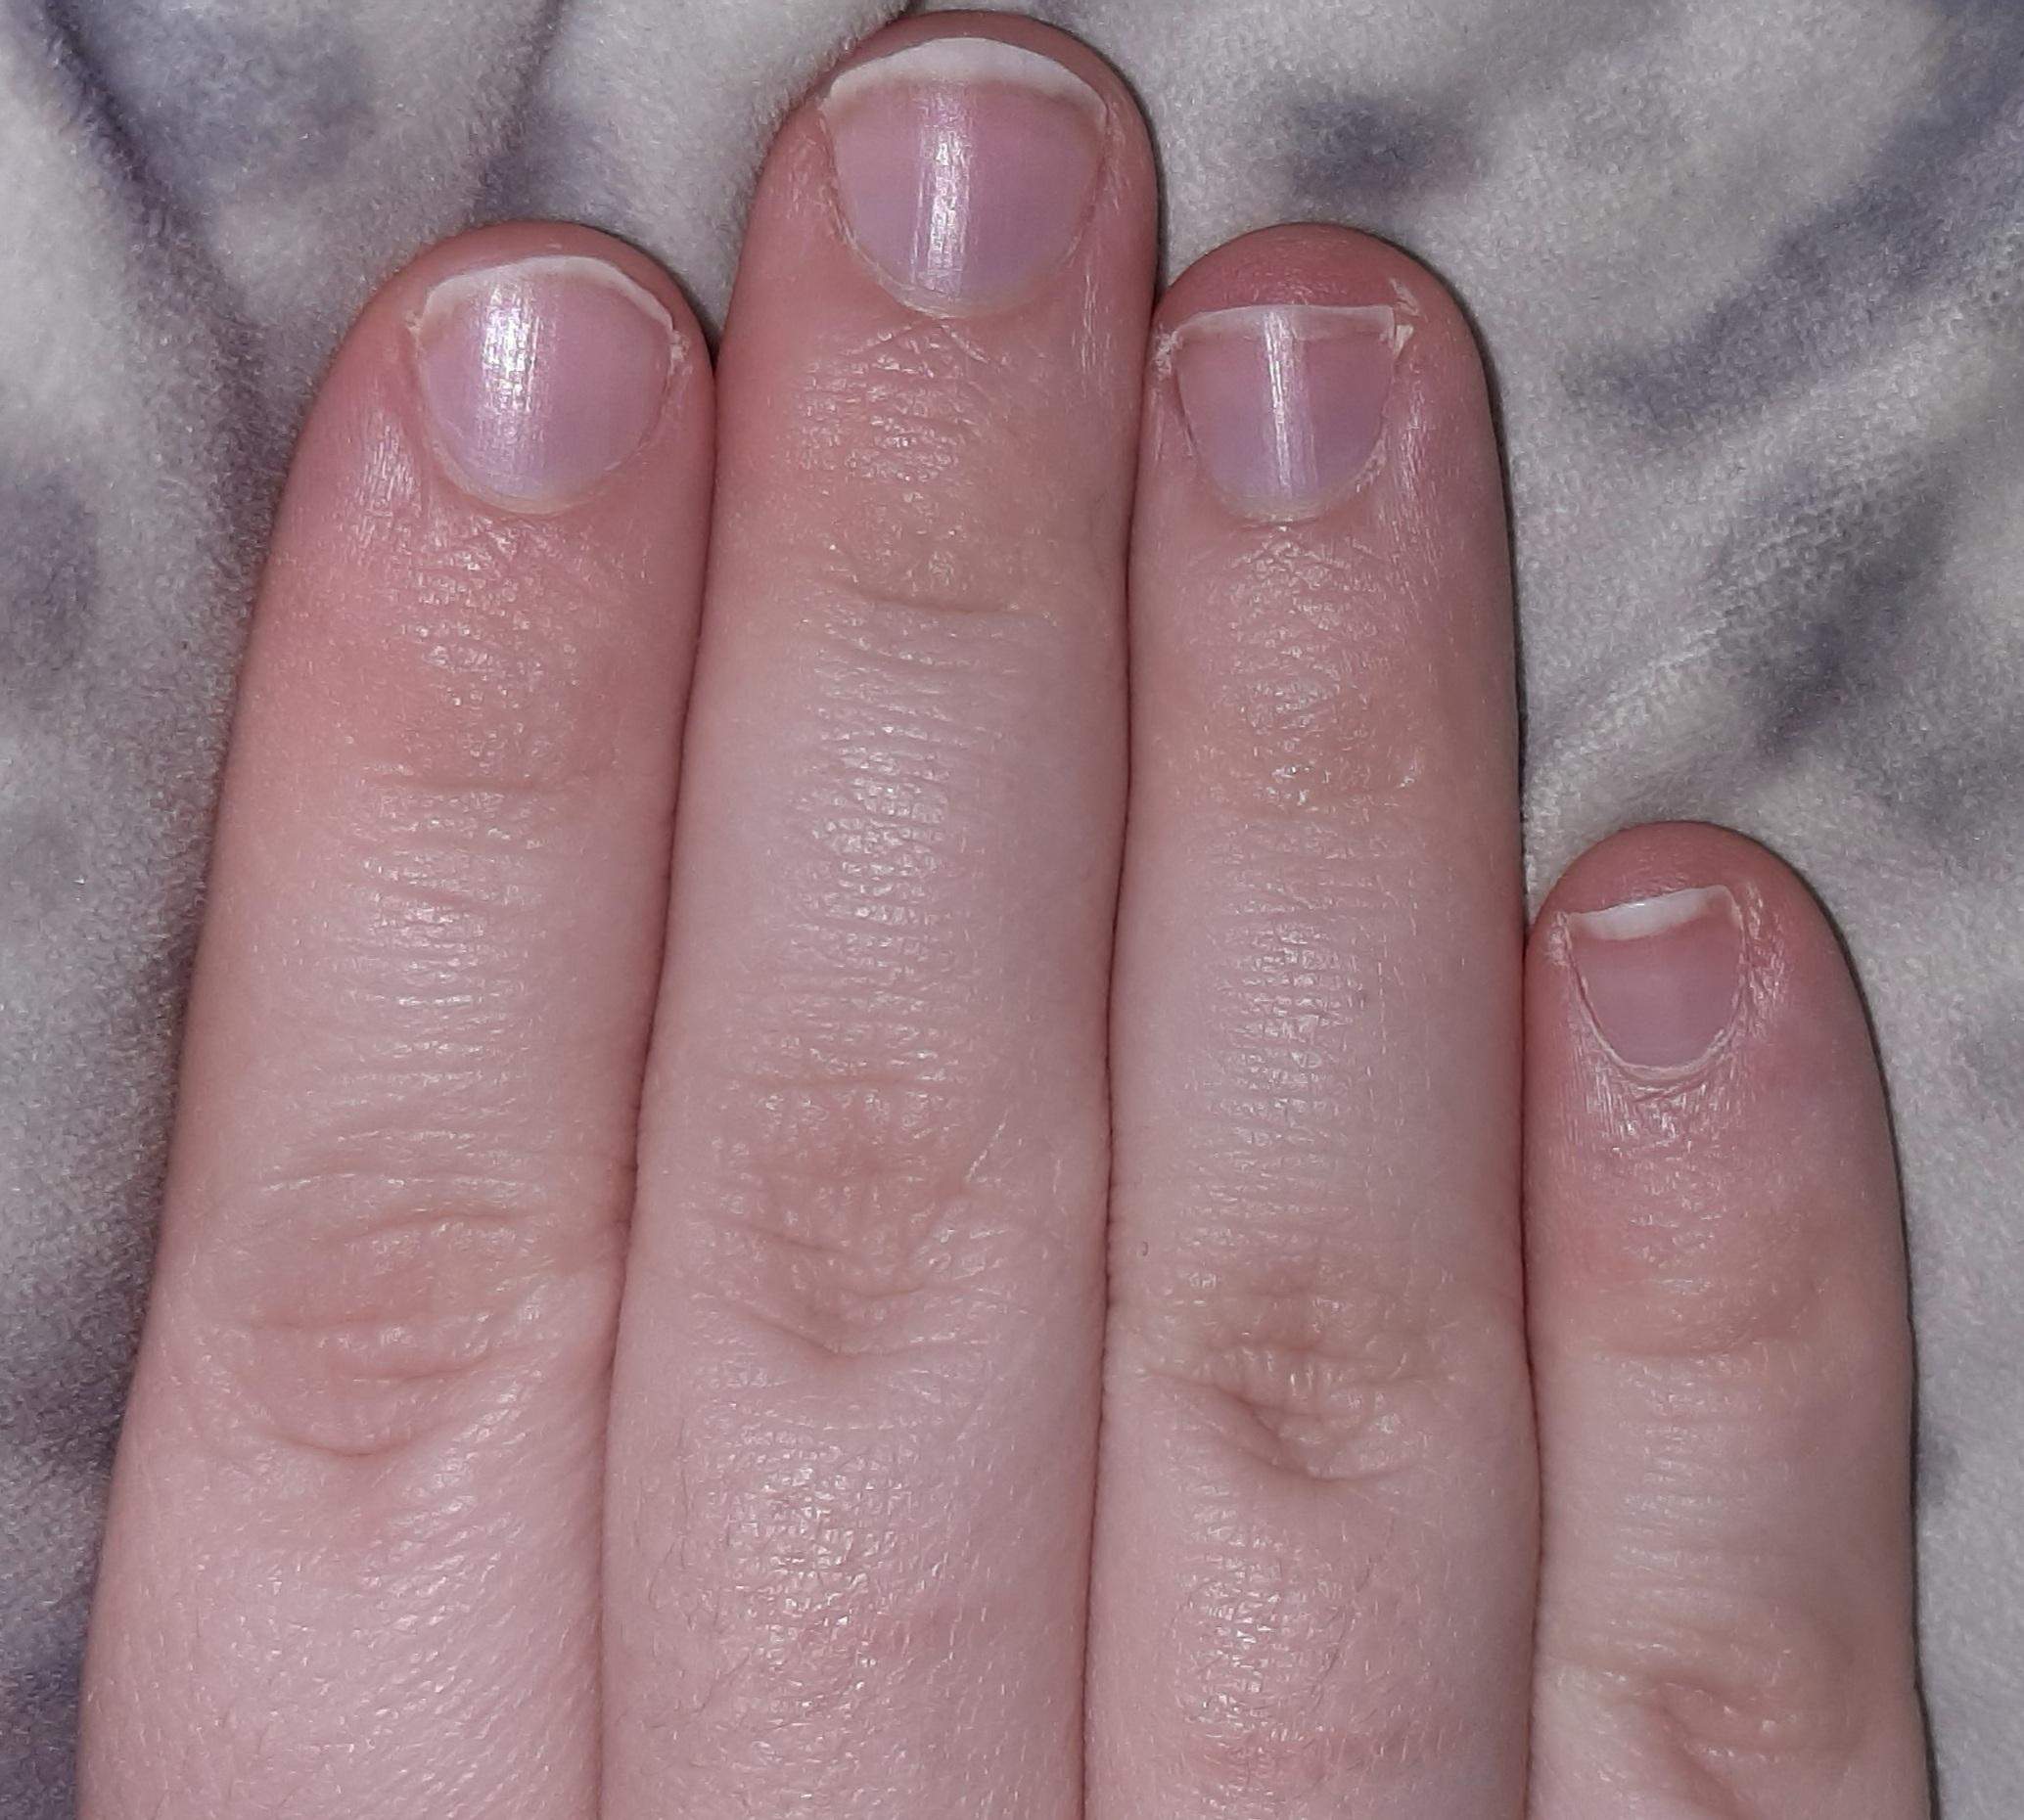 Wurstfinger: Diese Ringe lassen deine Finger schmaler wirken als sie sind -  wmn